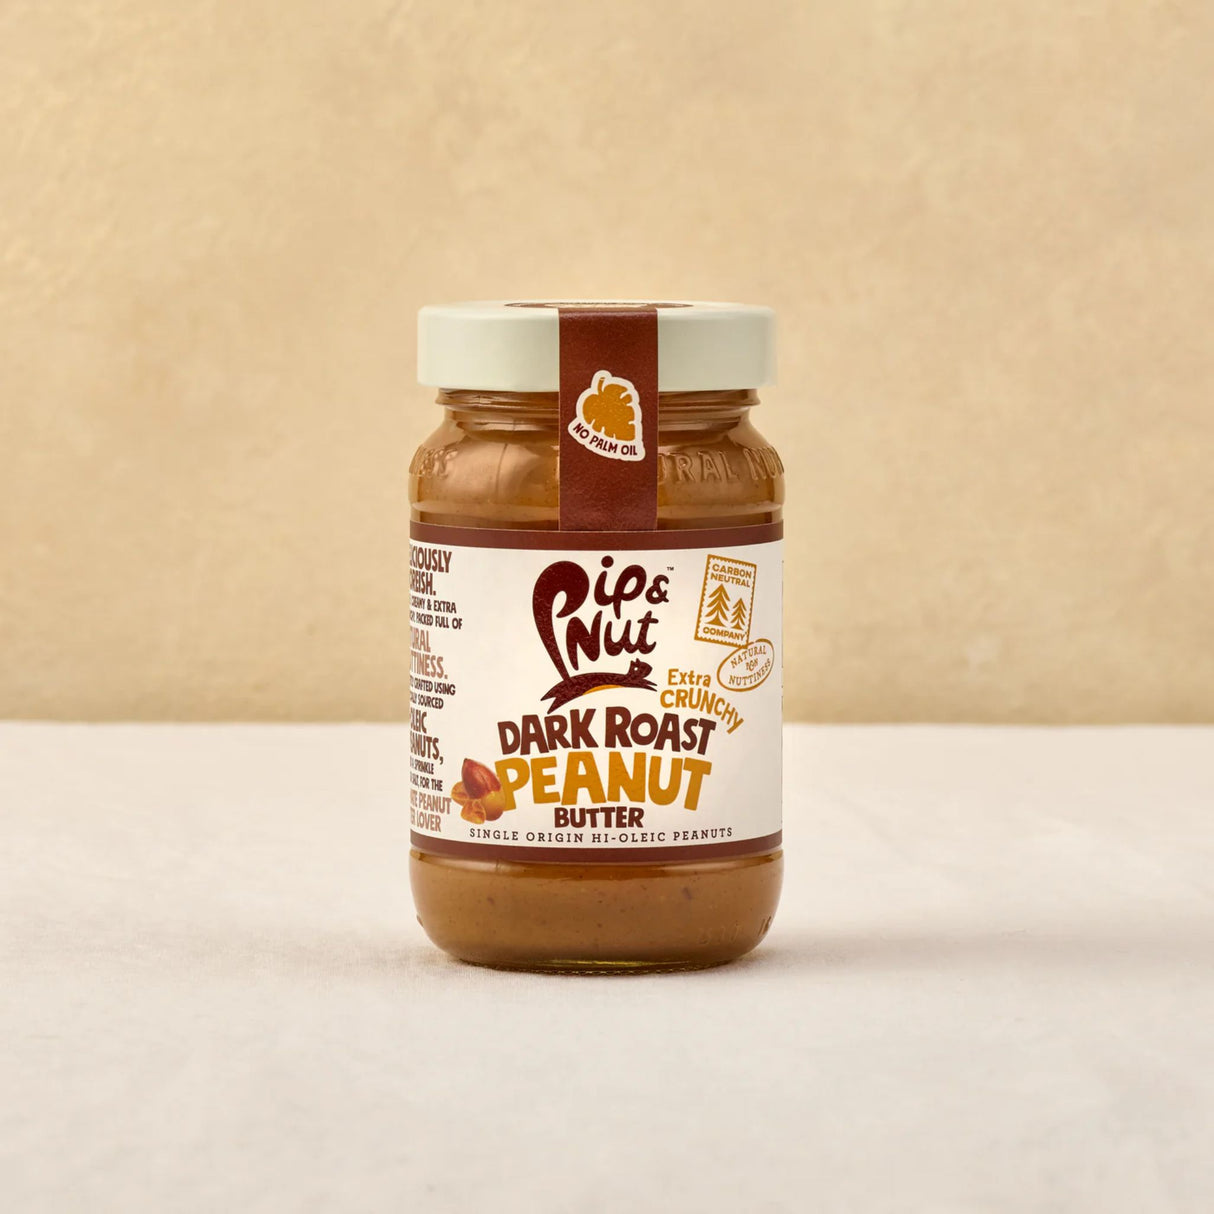 Pip & Nut Crunchy Deep Roast Peanut Butter 300g